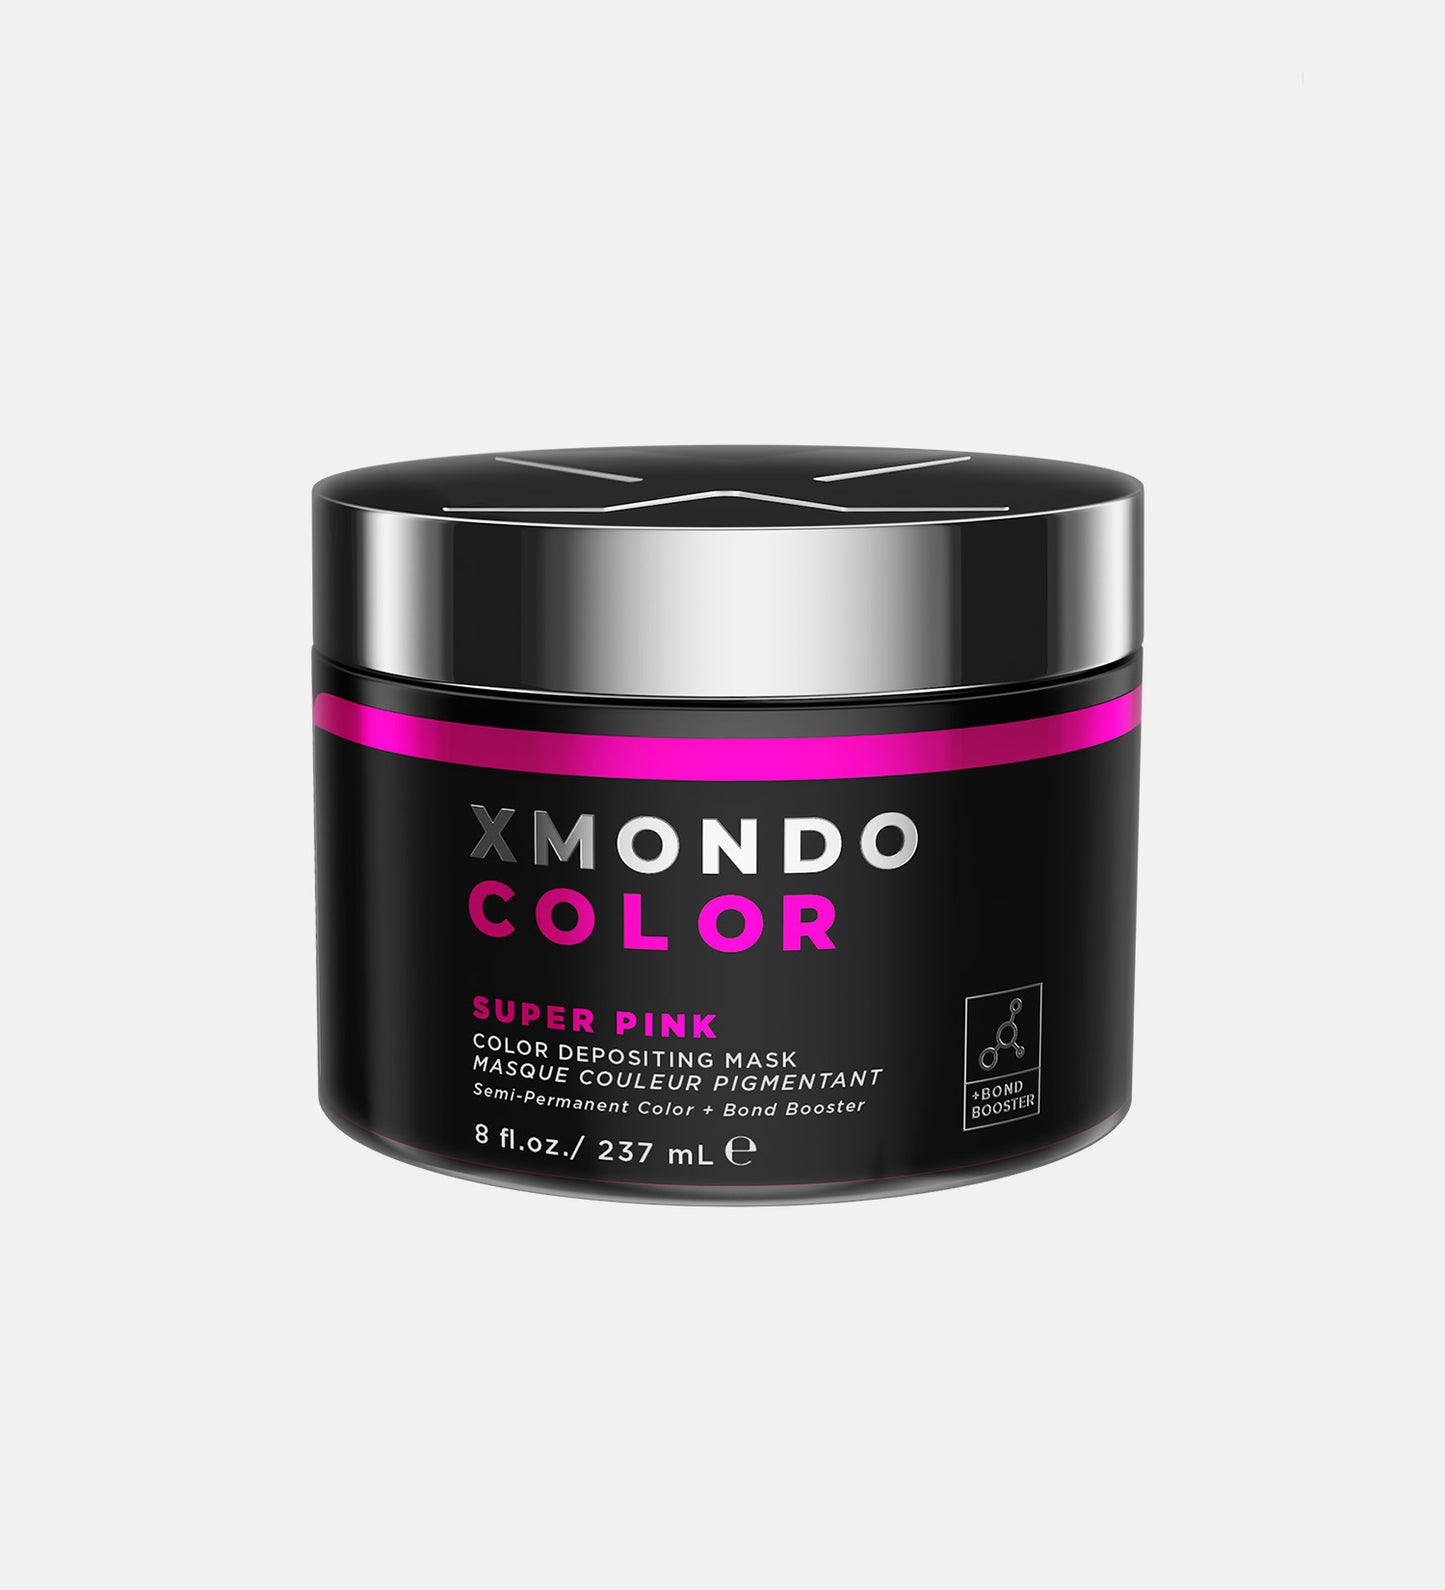 Jar of XMONDO Color Super Pink hair healing color